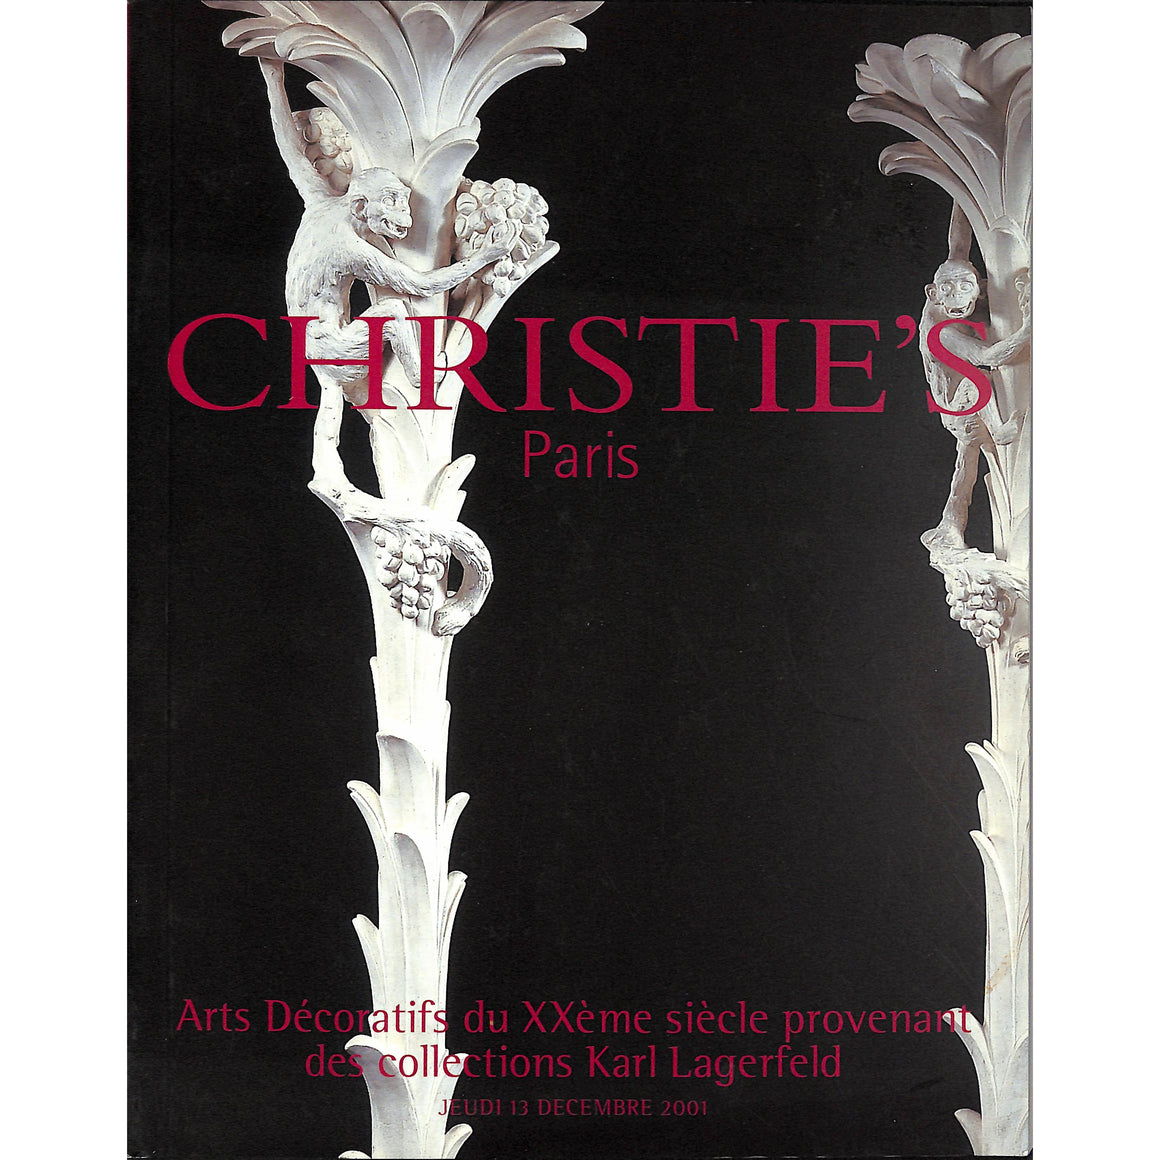 Christie's Arts Decoratifs du XXe'me siecle provenant des collections Karl Lagerfeld